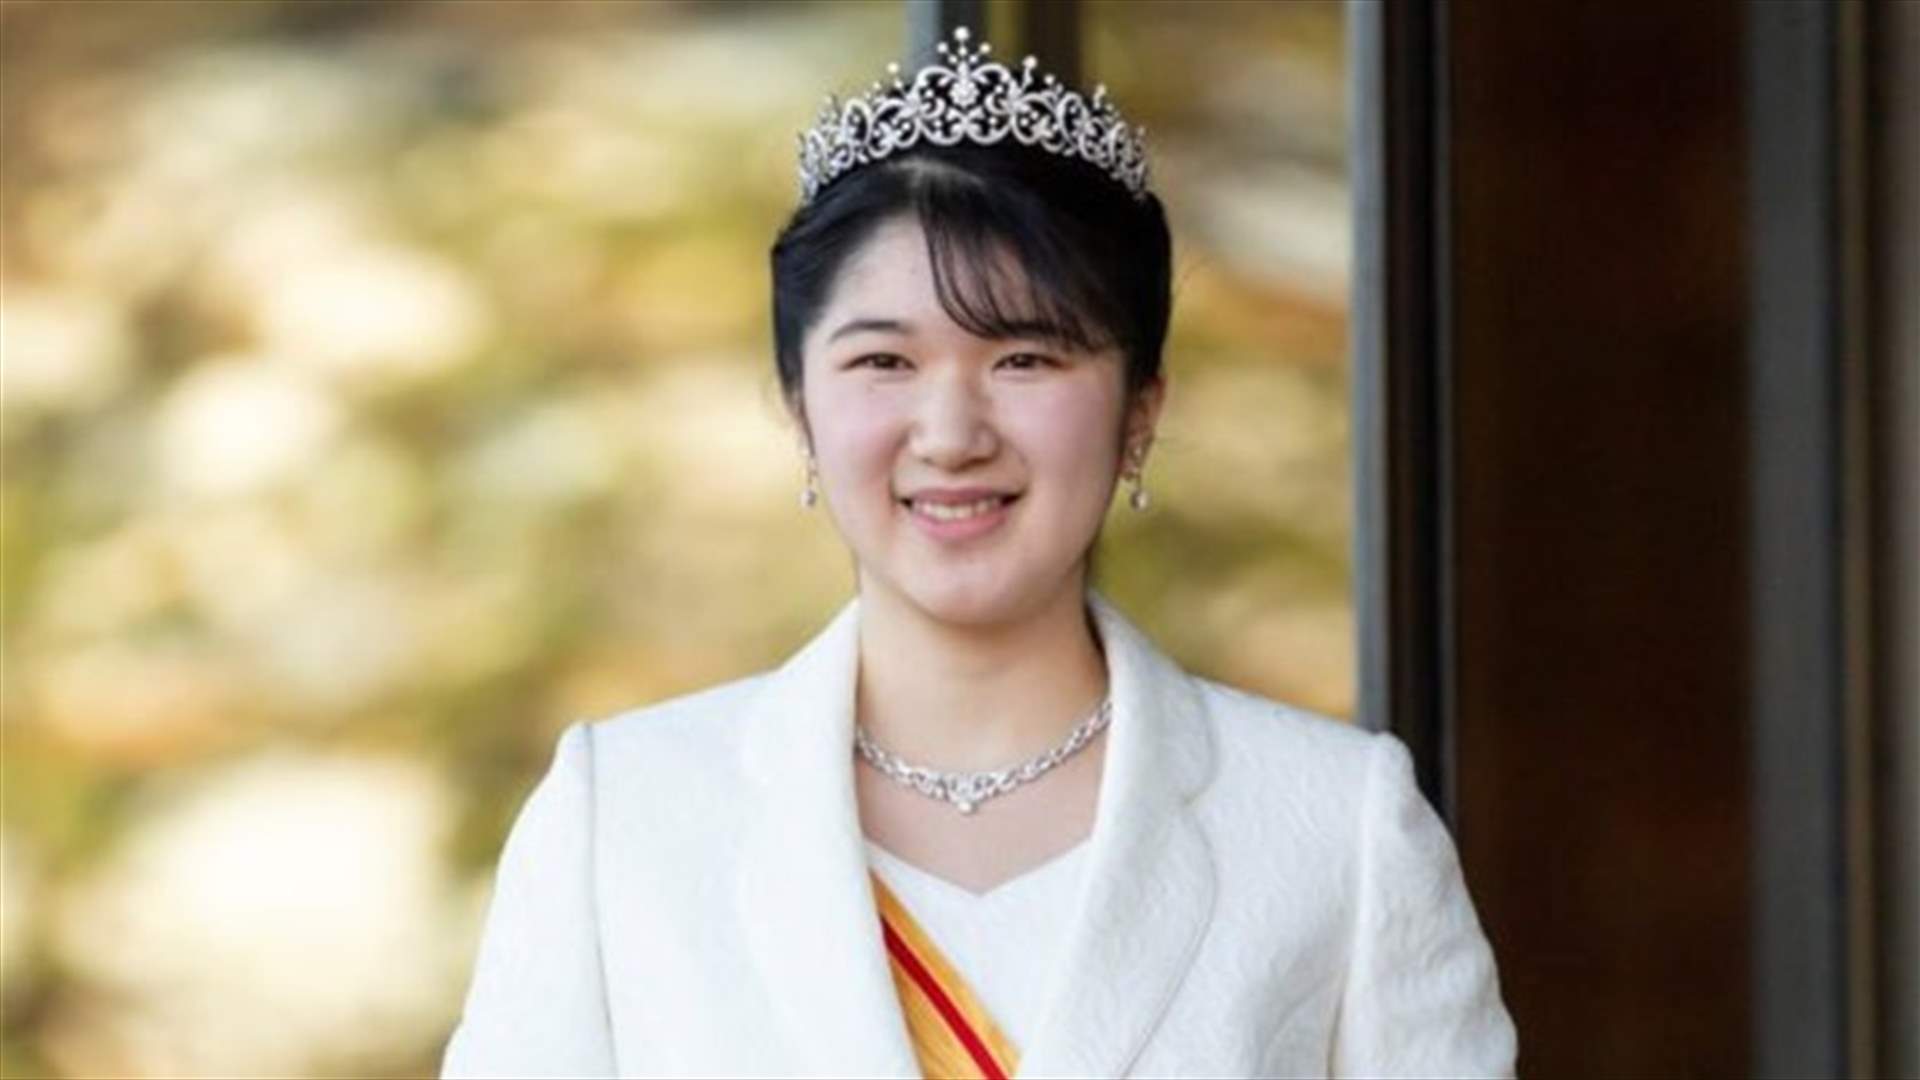 الأميرة اليابانية أيكو تحتفل ببلوغها سن الرشد